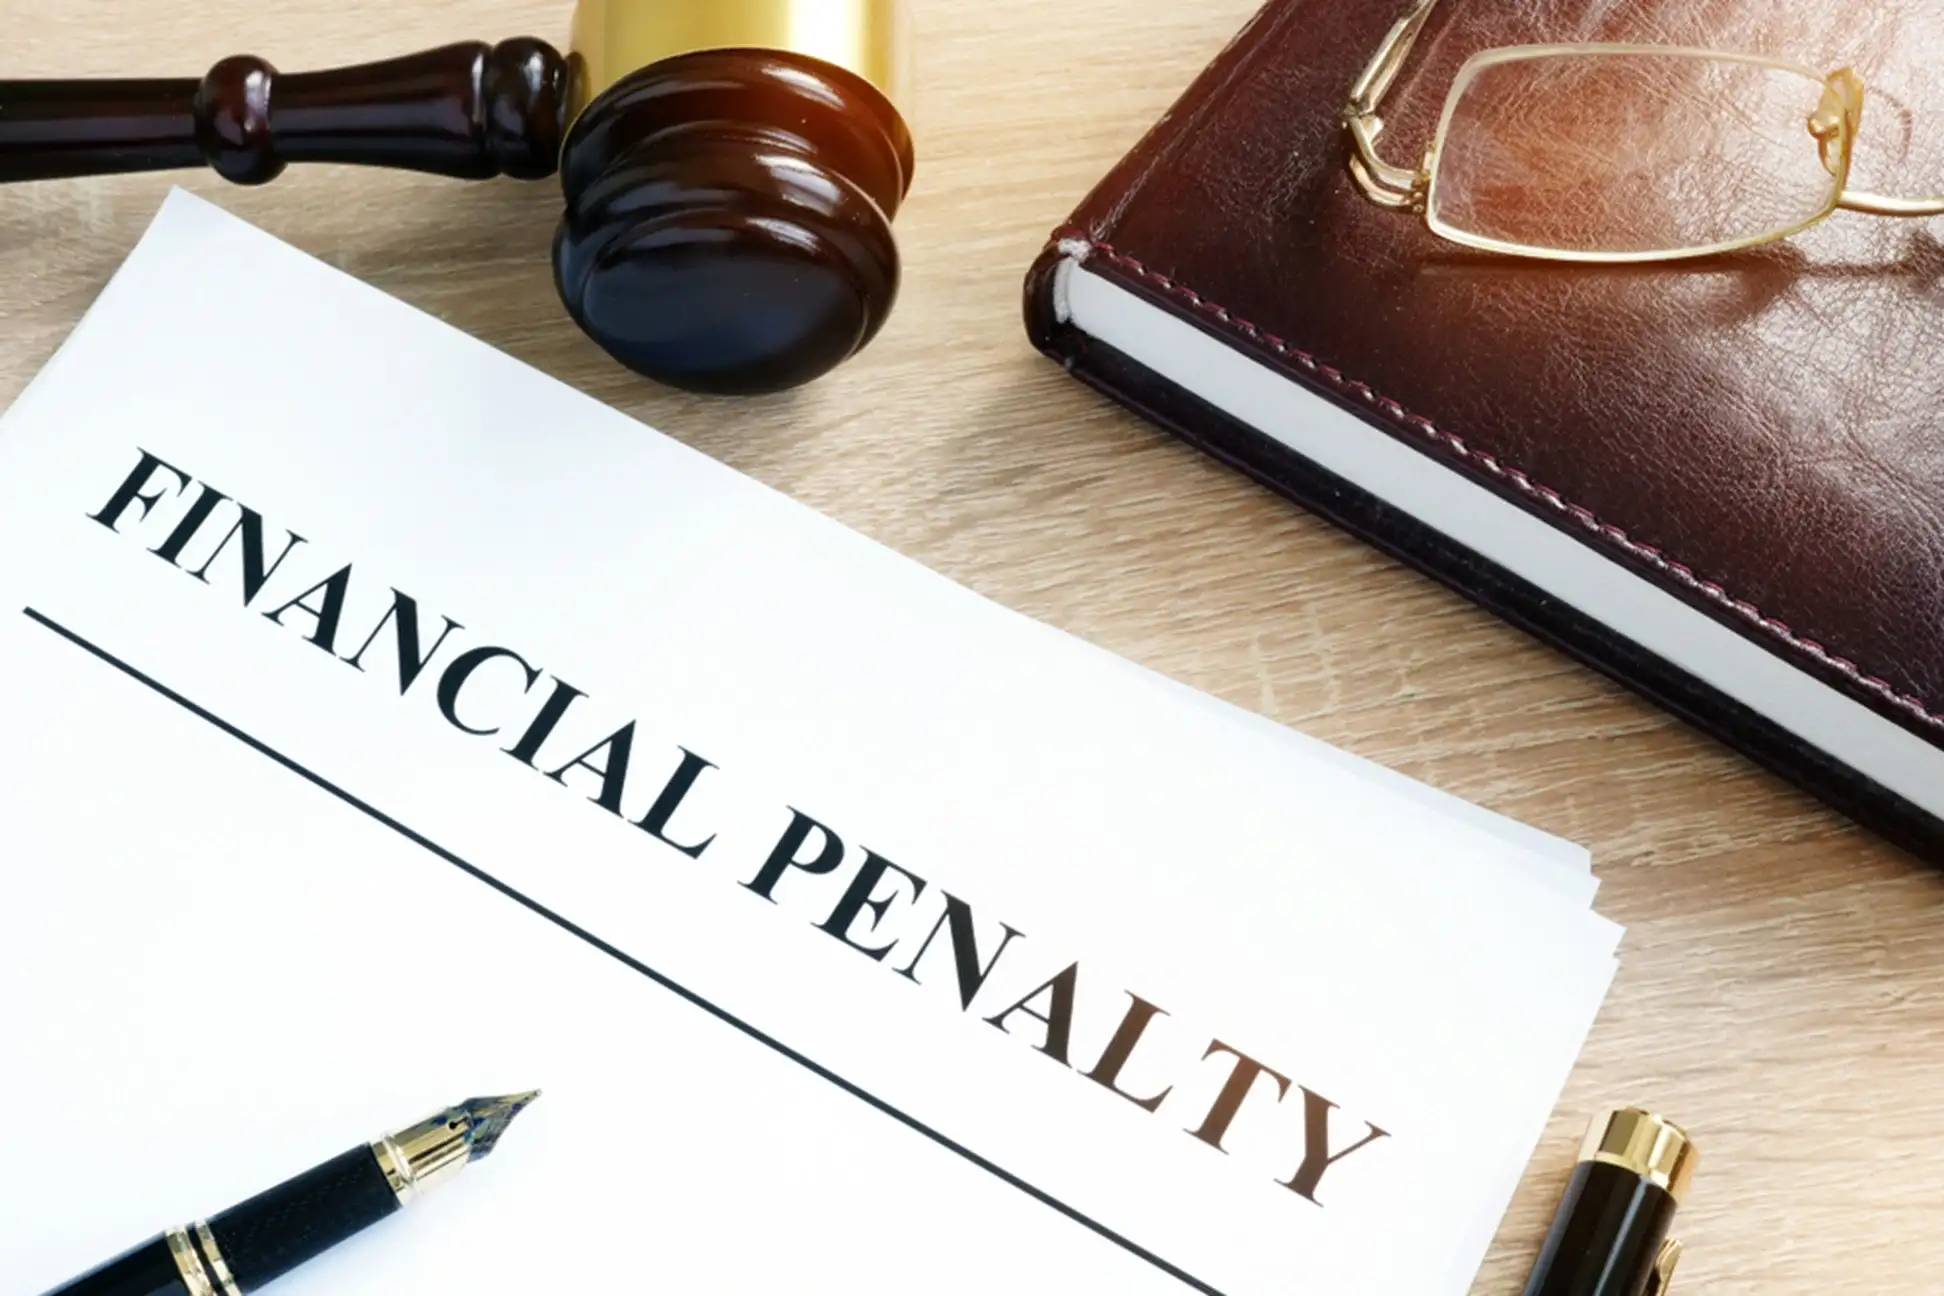 financial penalty